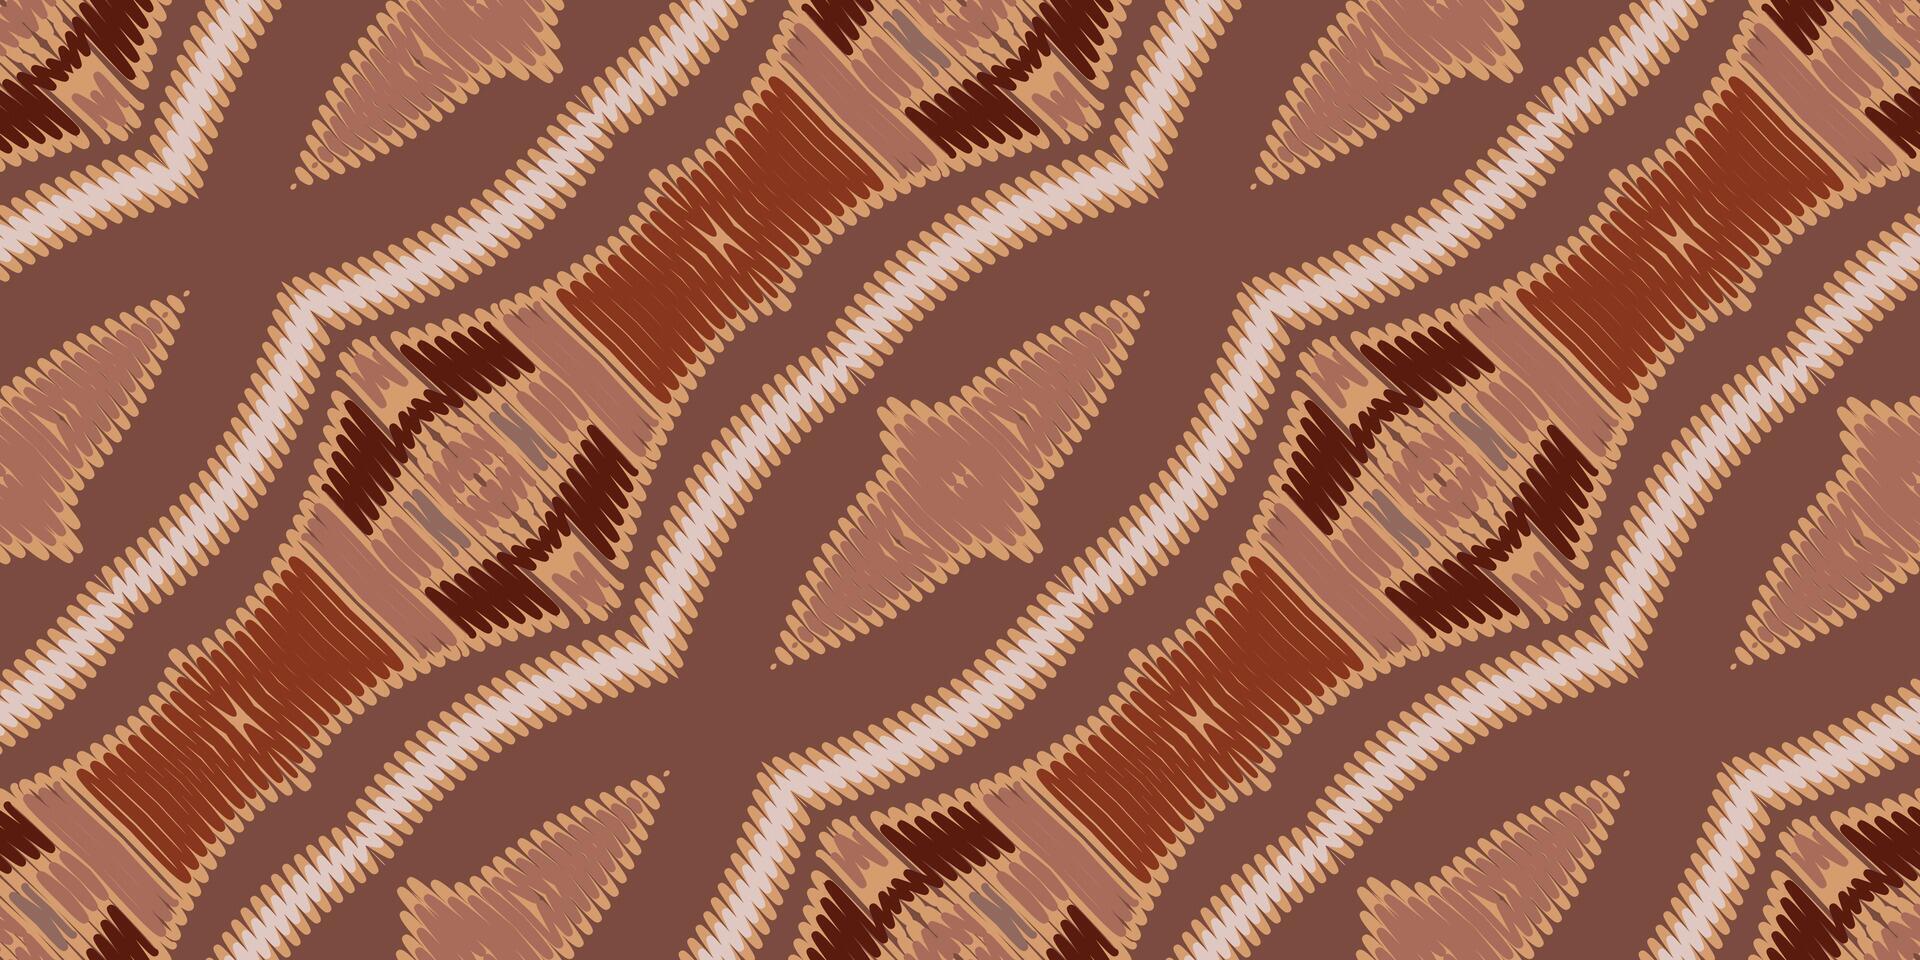 africano ikat paisley ricamo. geometrico etnico orientale senza soluzione di continuità modello tradizionale sfondo. azteco stile astratto vettore illustrazione. design per struttura, tessuto, vestiario, avvolgere, tappeto.